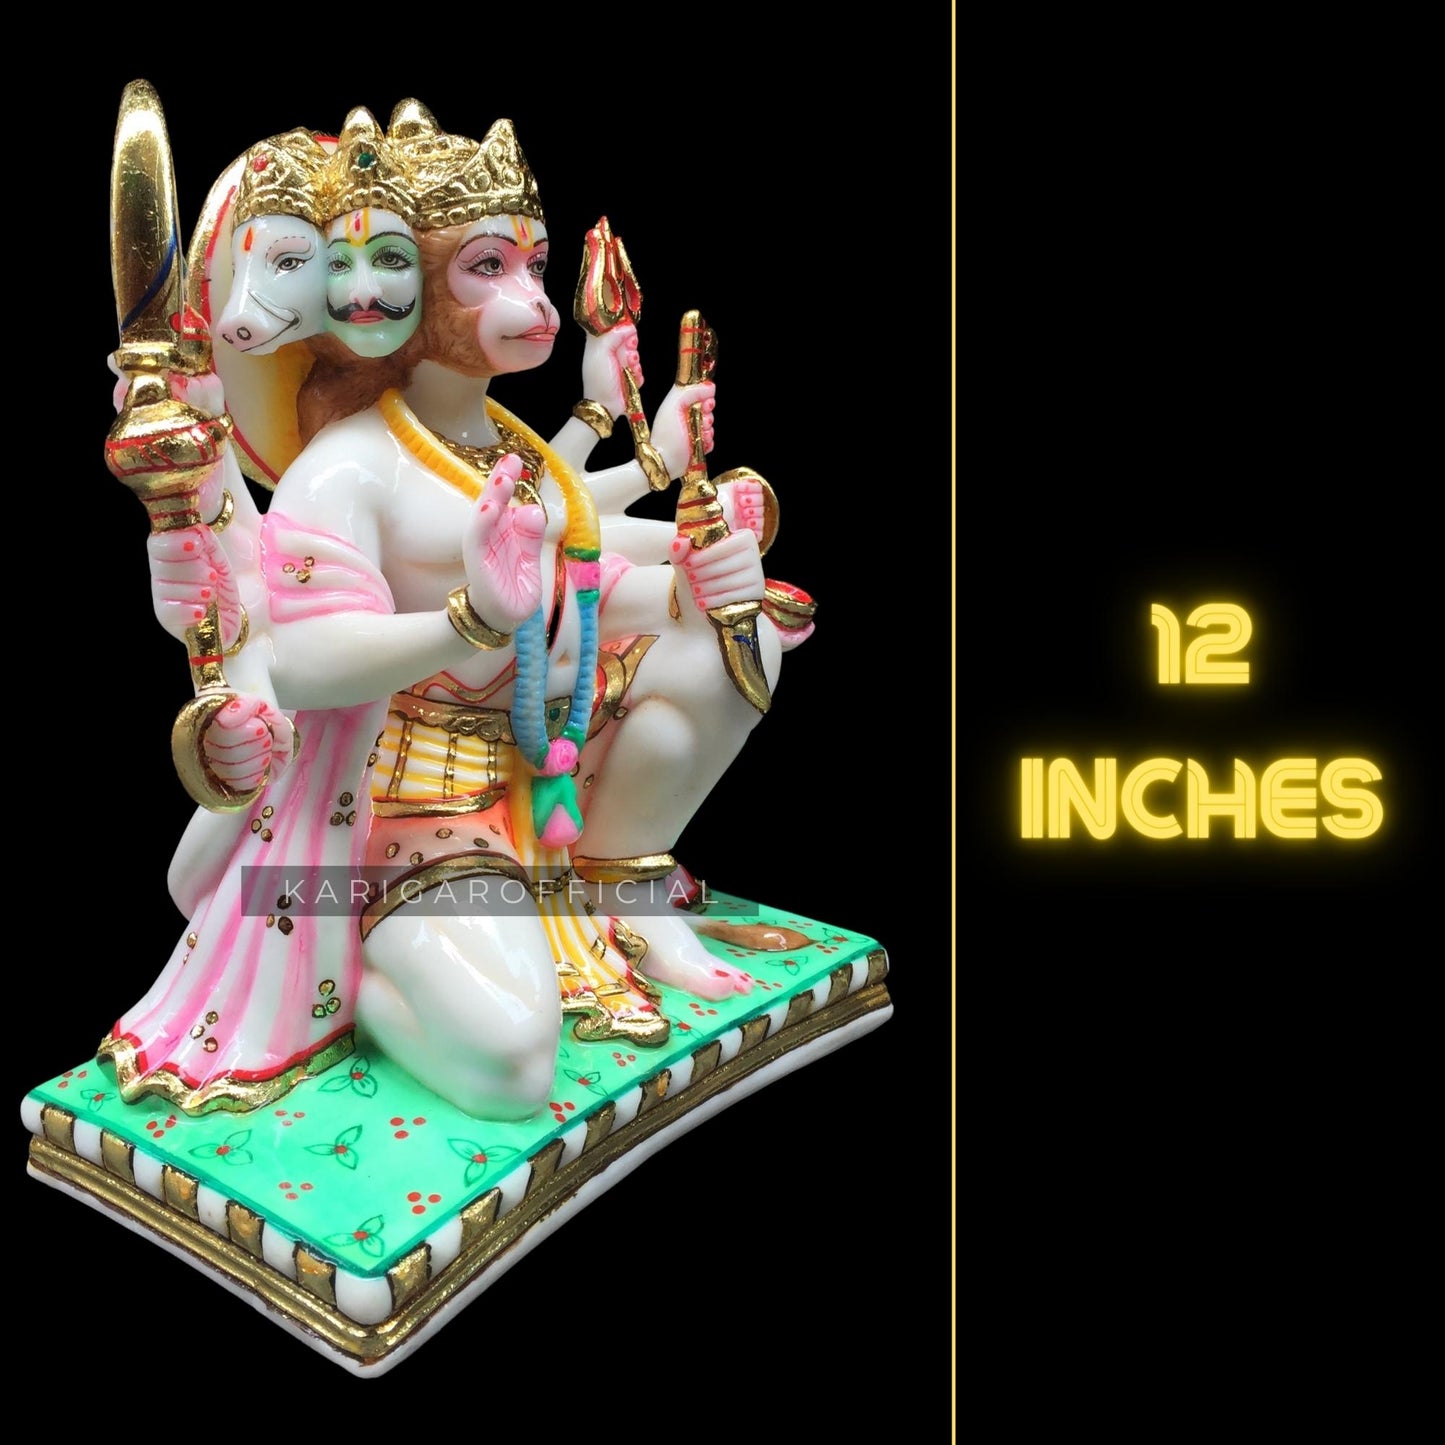 Estatua de Hanuman Murti grande de 12.0 in de hoja de oro Panchmukhi Hanuman figura Bajrangbali ídolo de mármol hindú dios mono 5 caras para orar devoción energía energía Bhakti hogar templo regalos escultura